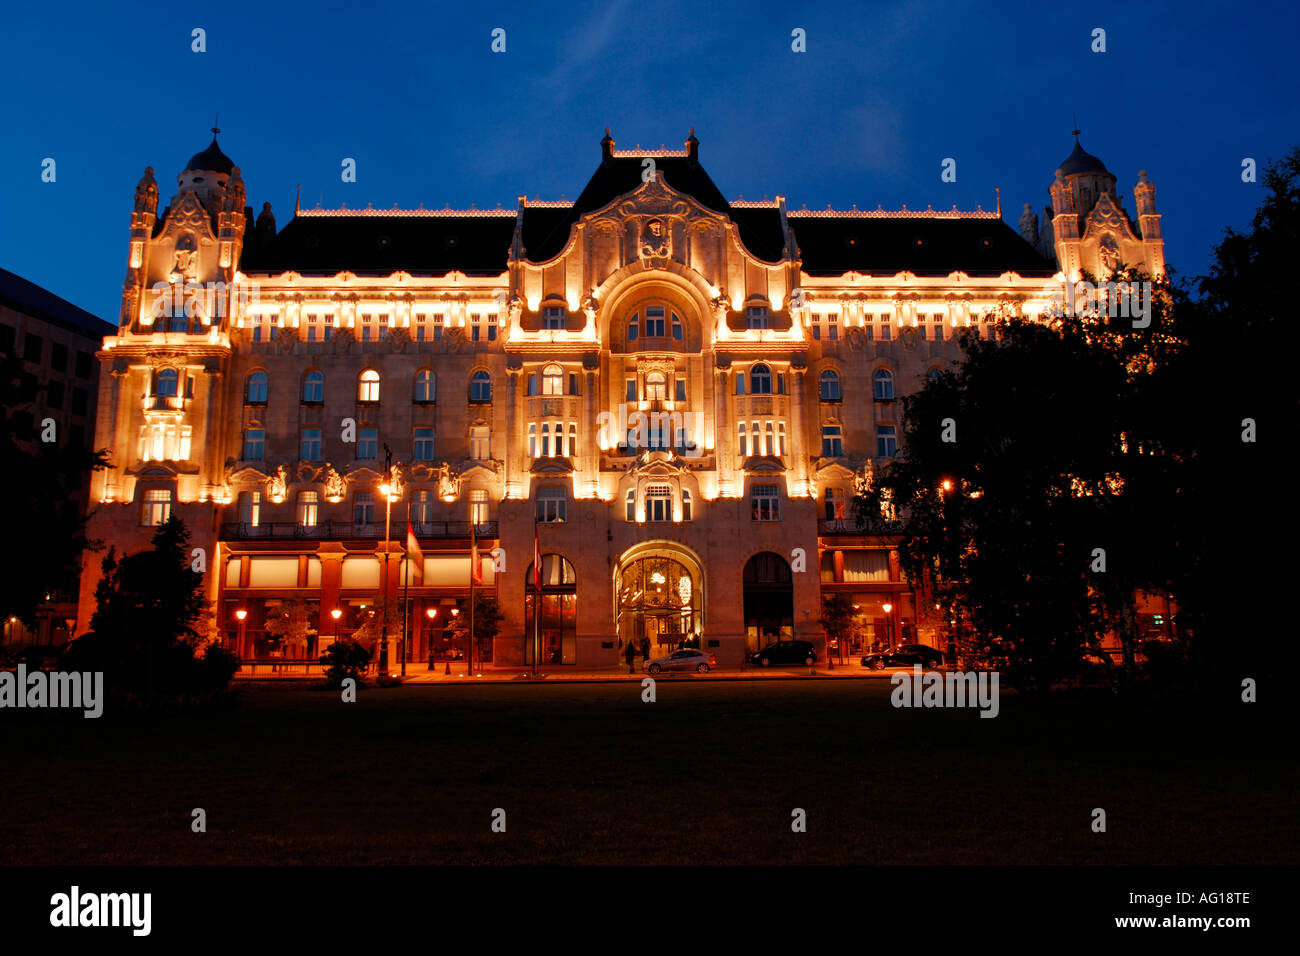 Gresham Palace Budapest Hungary Stock Photo